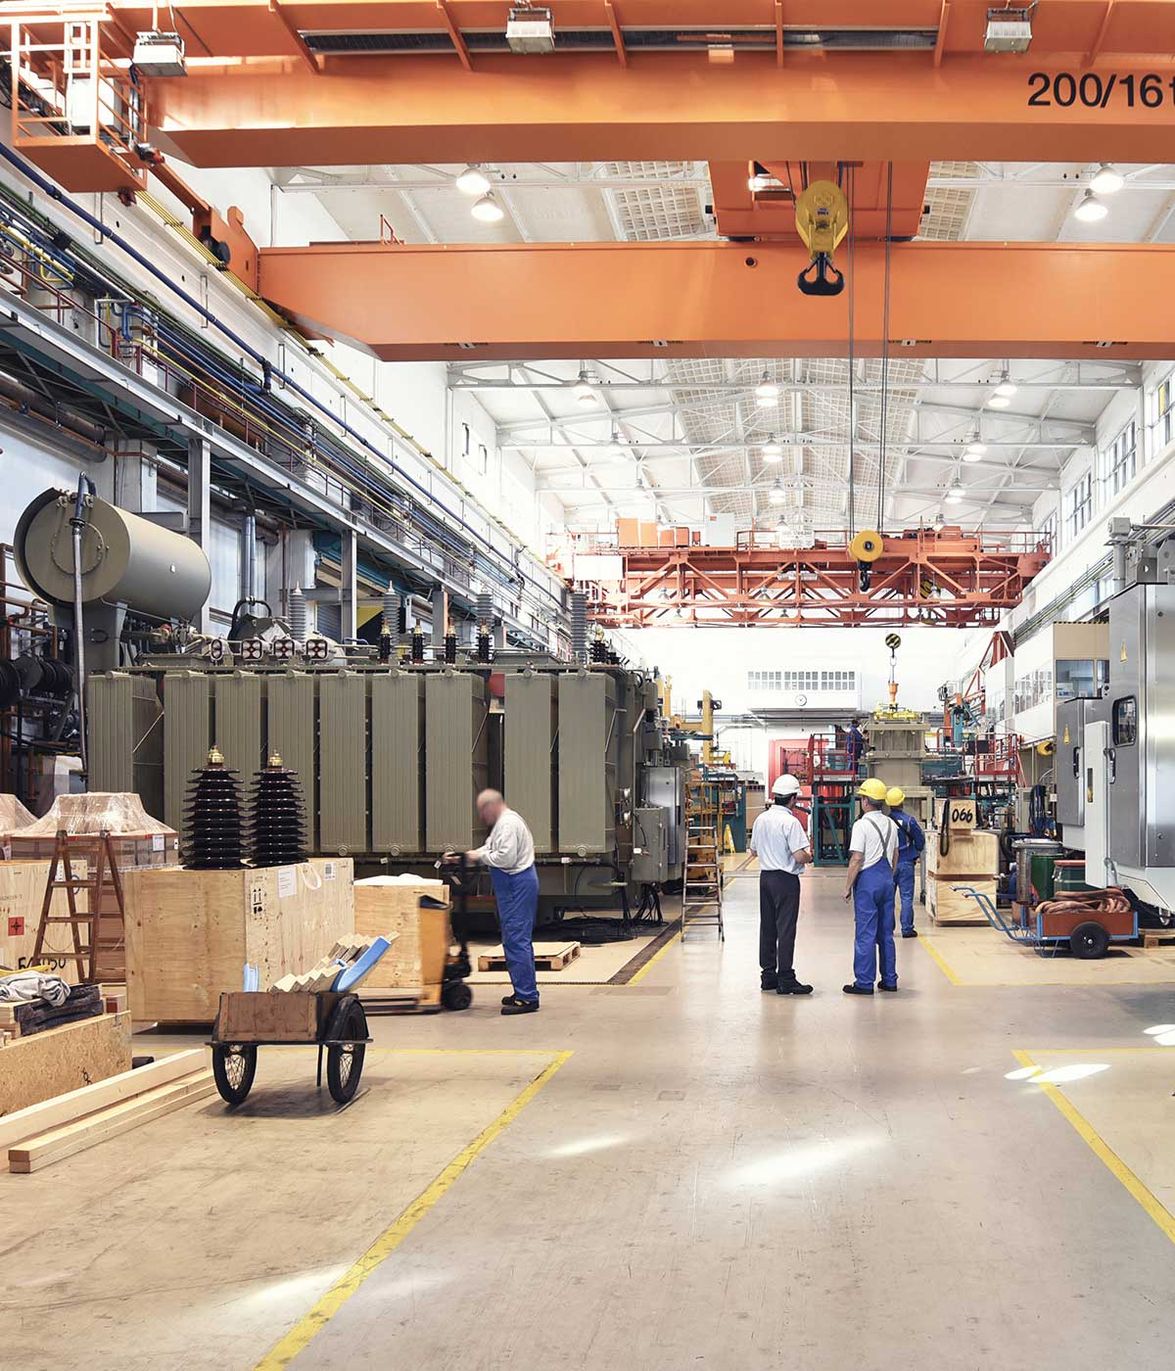 Industriebetrieb im Maschinenbau zur Herstellung von Transformatoren - Innenbereich einer Produktionshalle